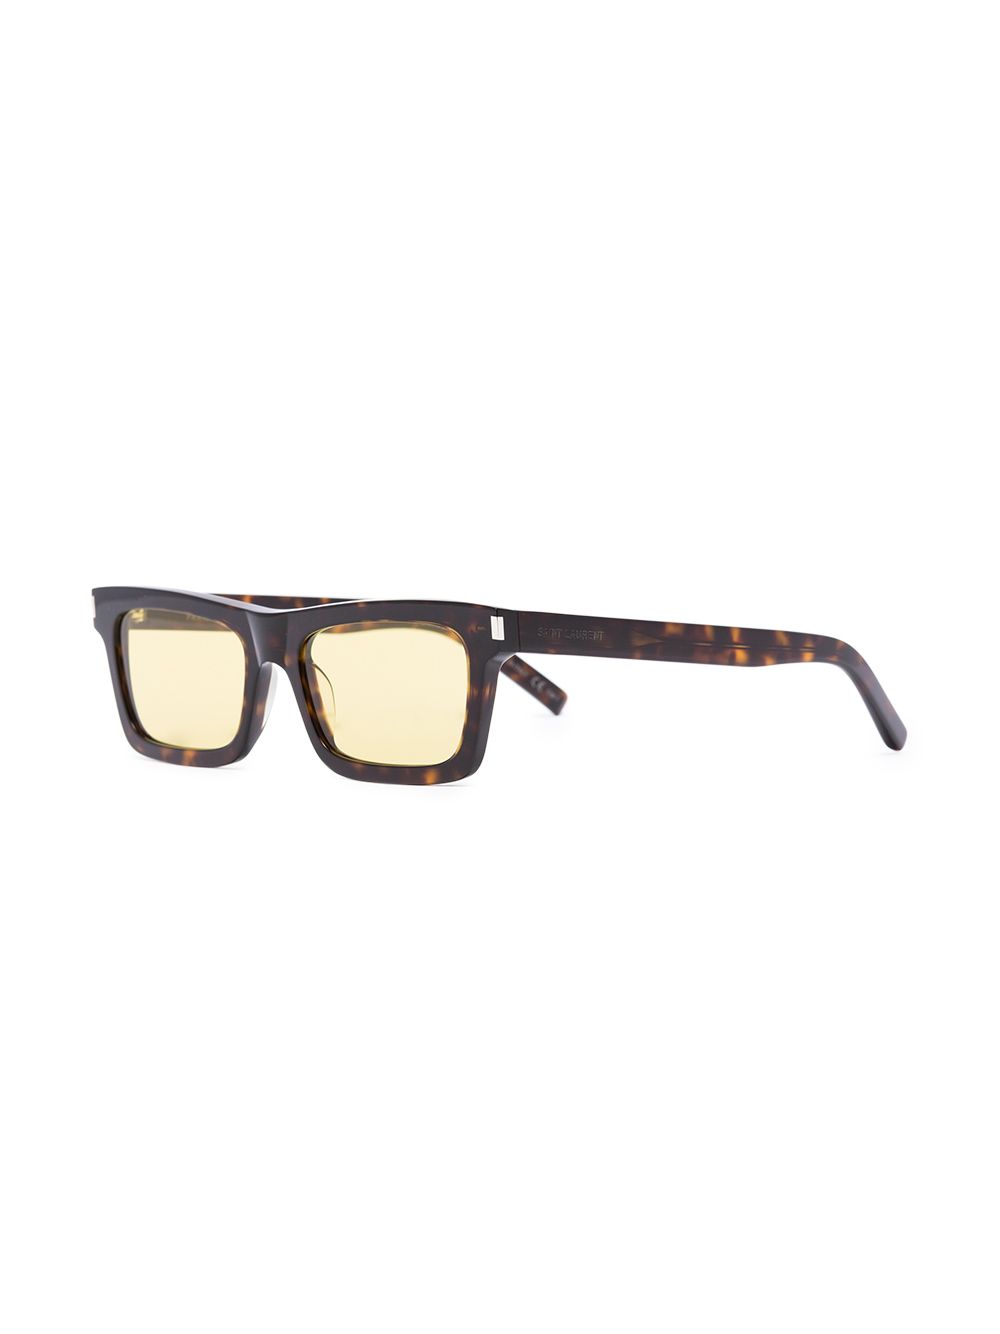 фото Saint laurent eyewear солнцезащитные очки betty в квадратной оправе